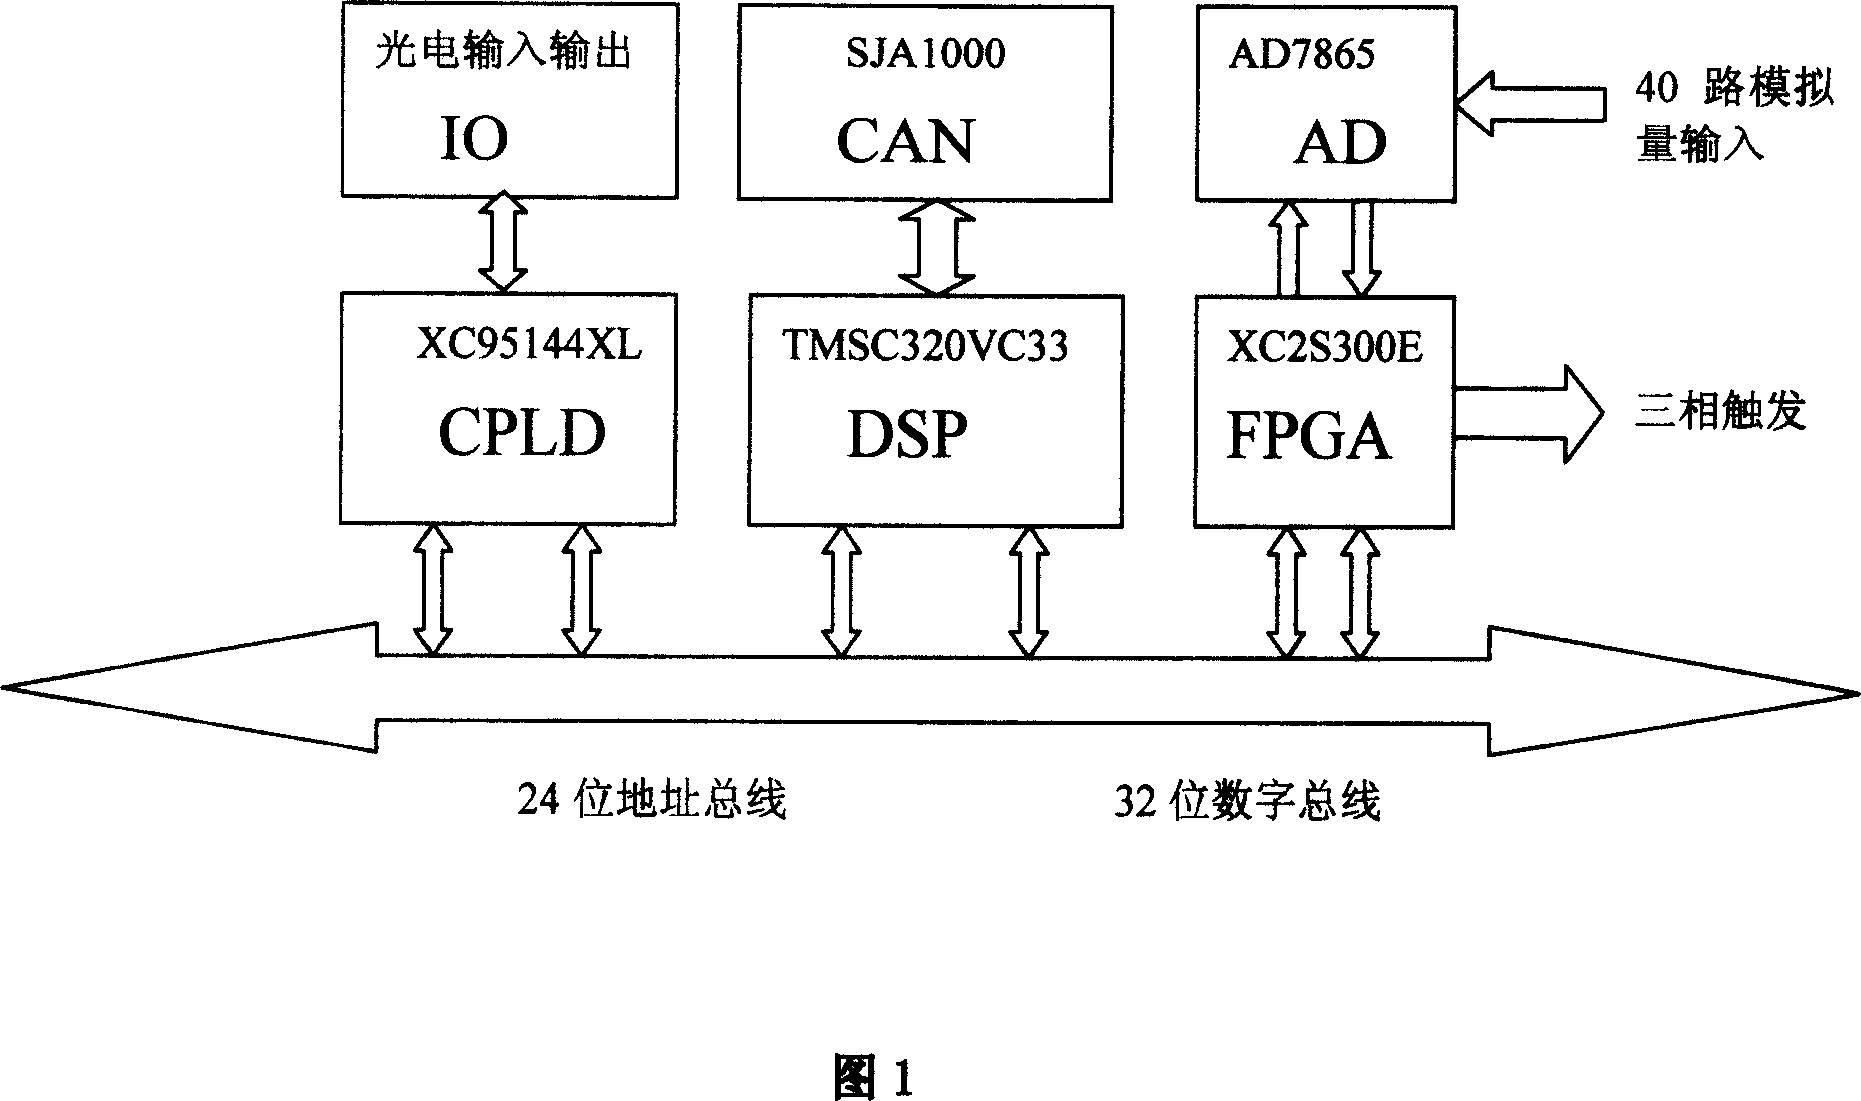 Regulating board of static var compensator based on floating point DSP and FPGA